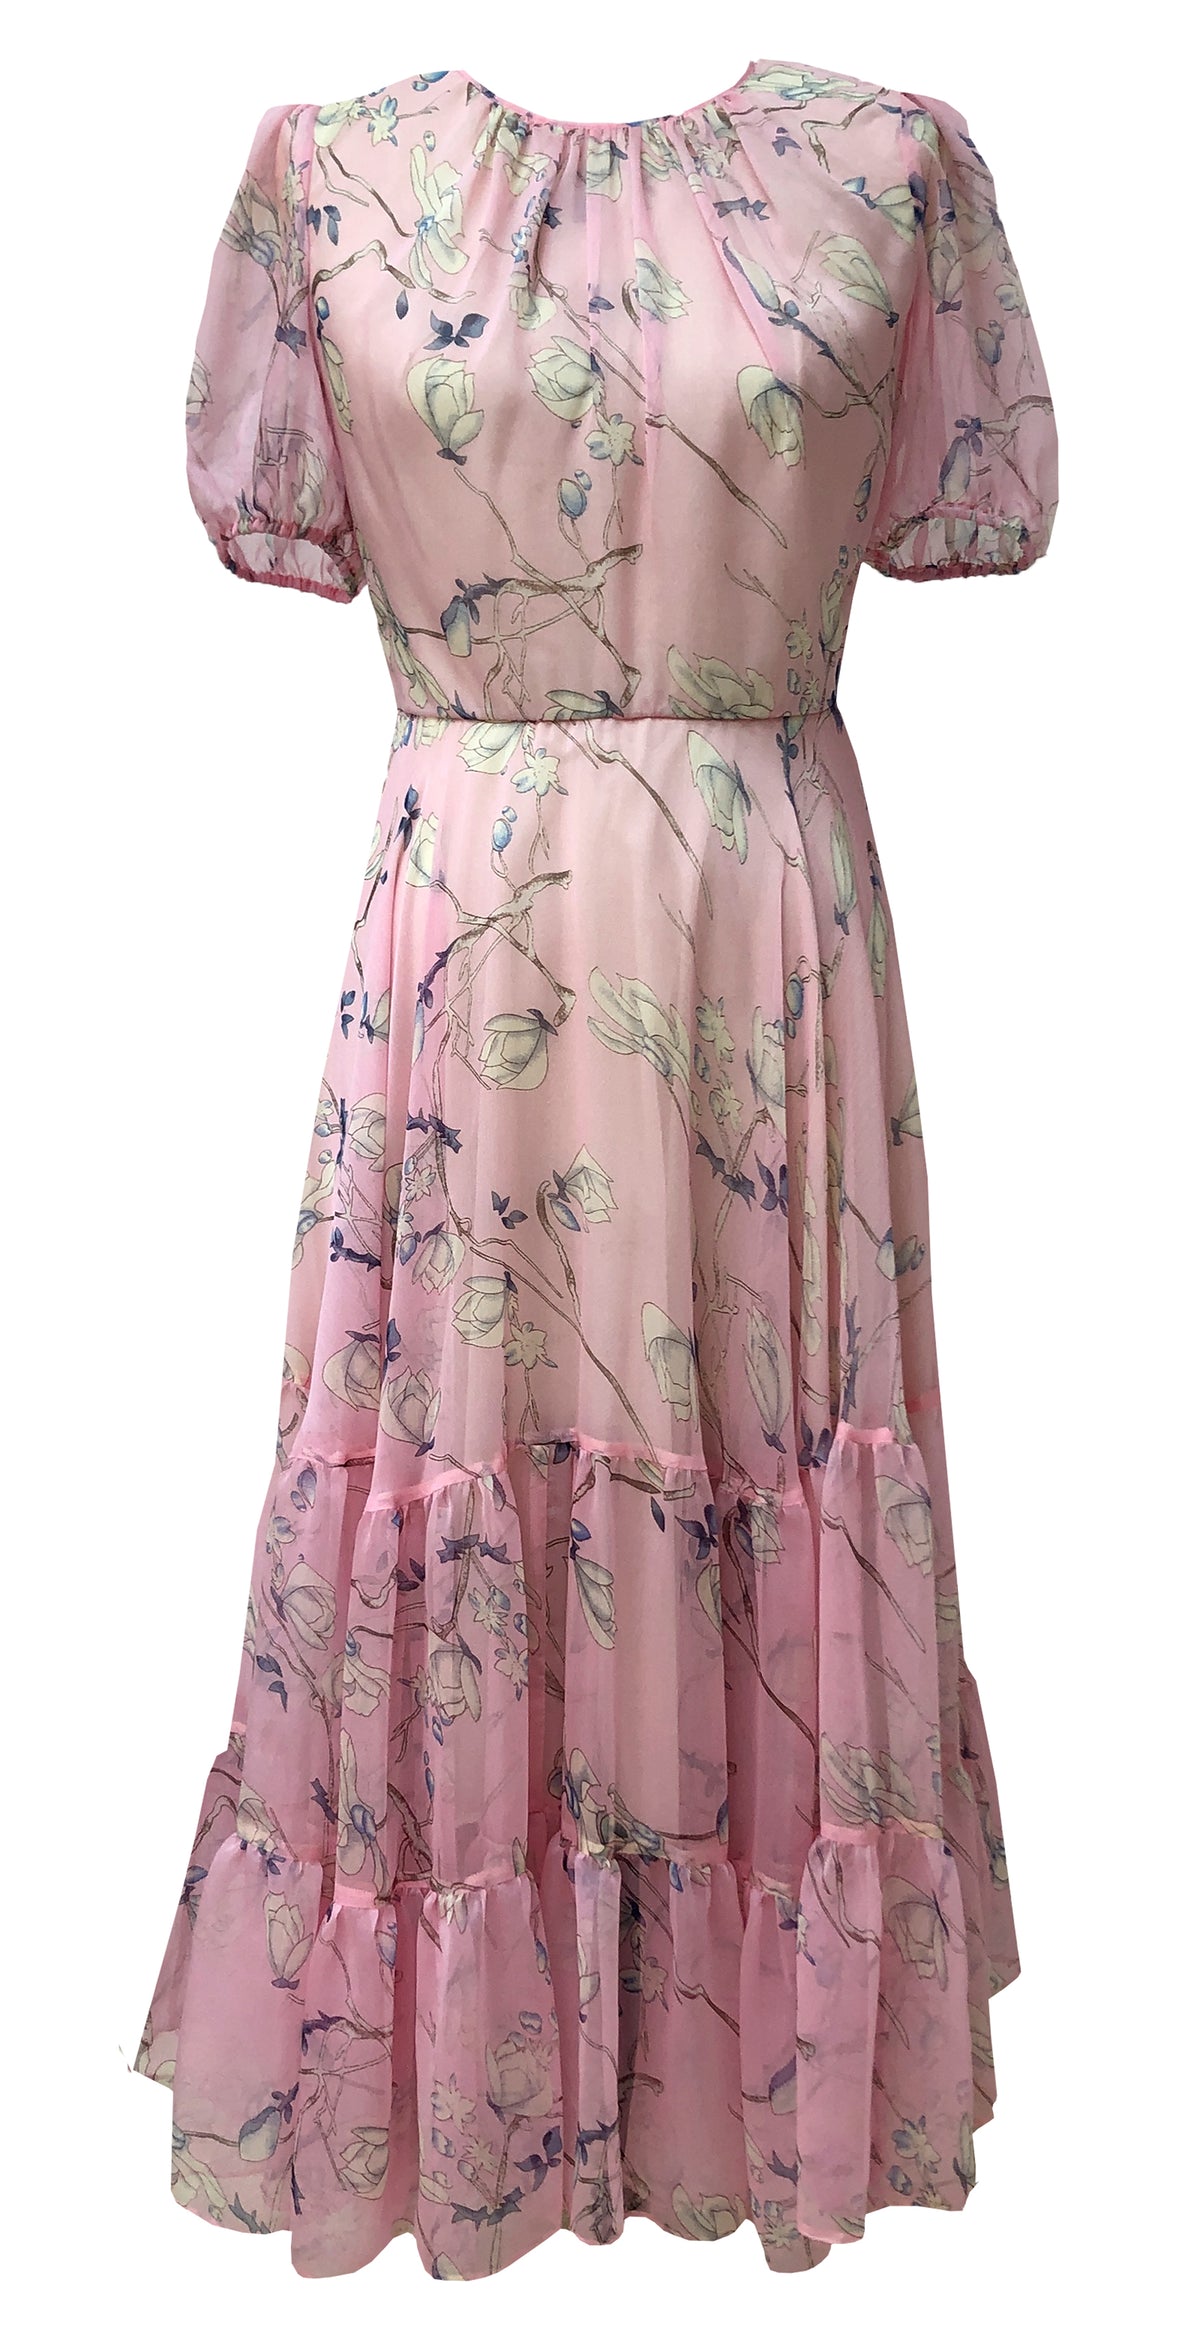 Kendra Dress DRC359 Pink Oriental Print Chiffon